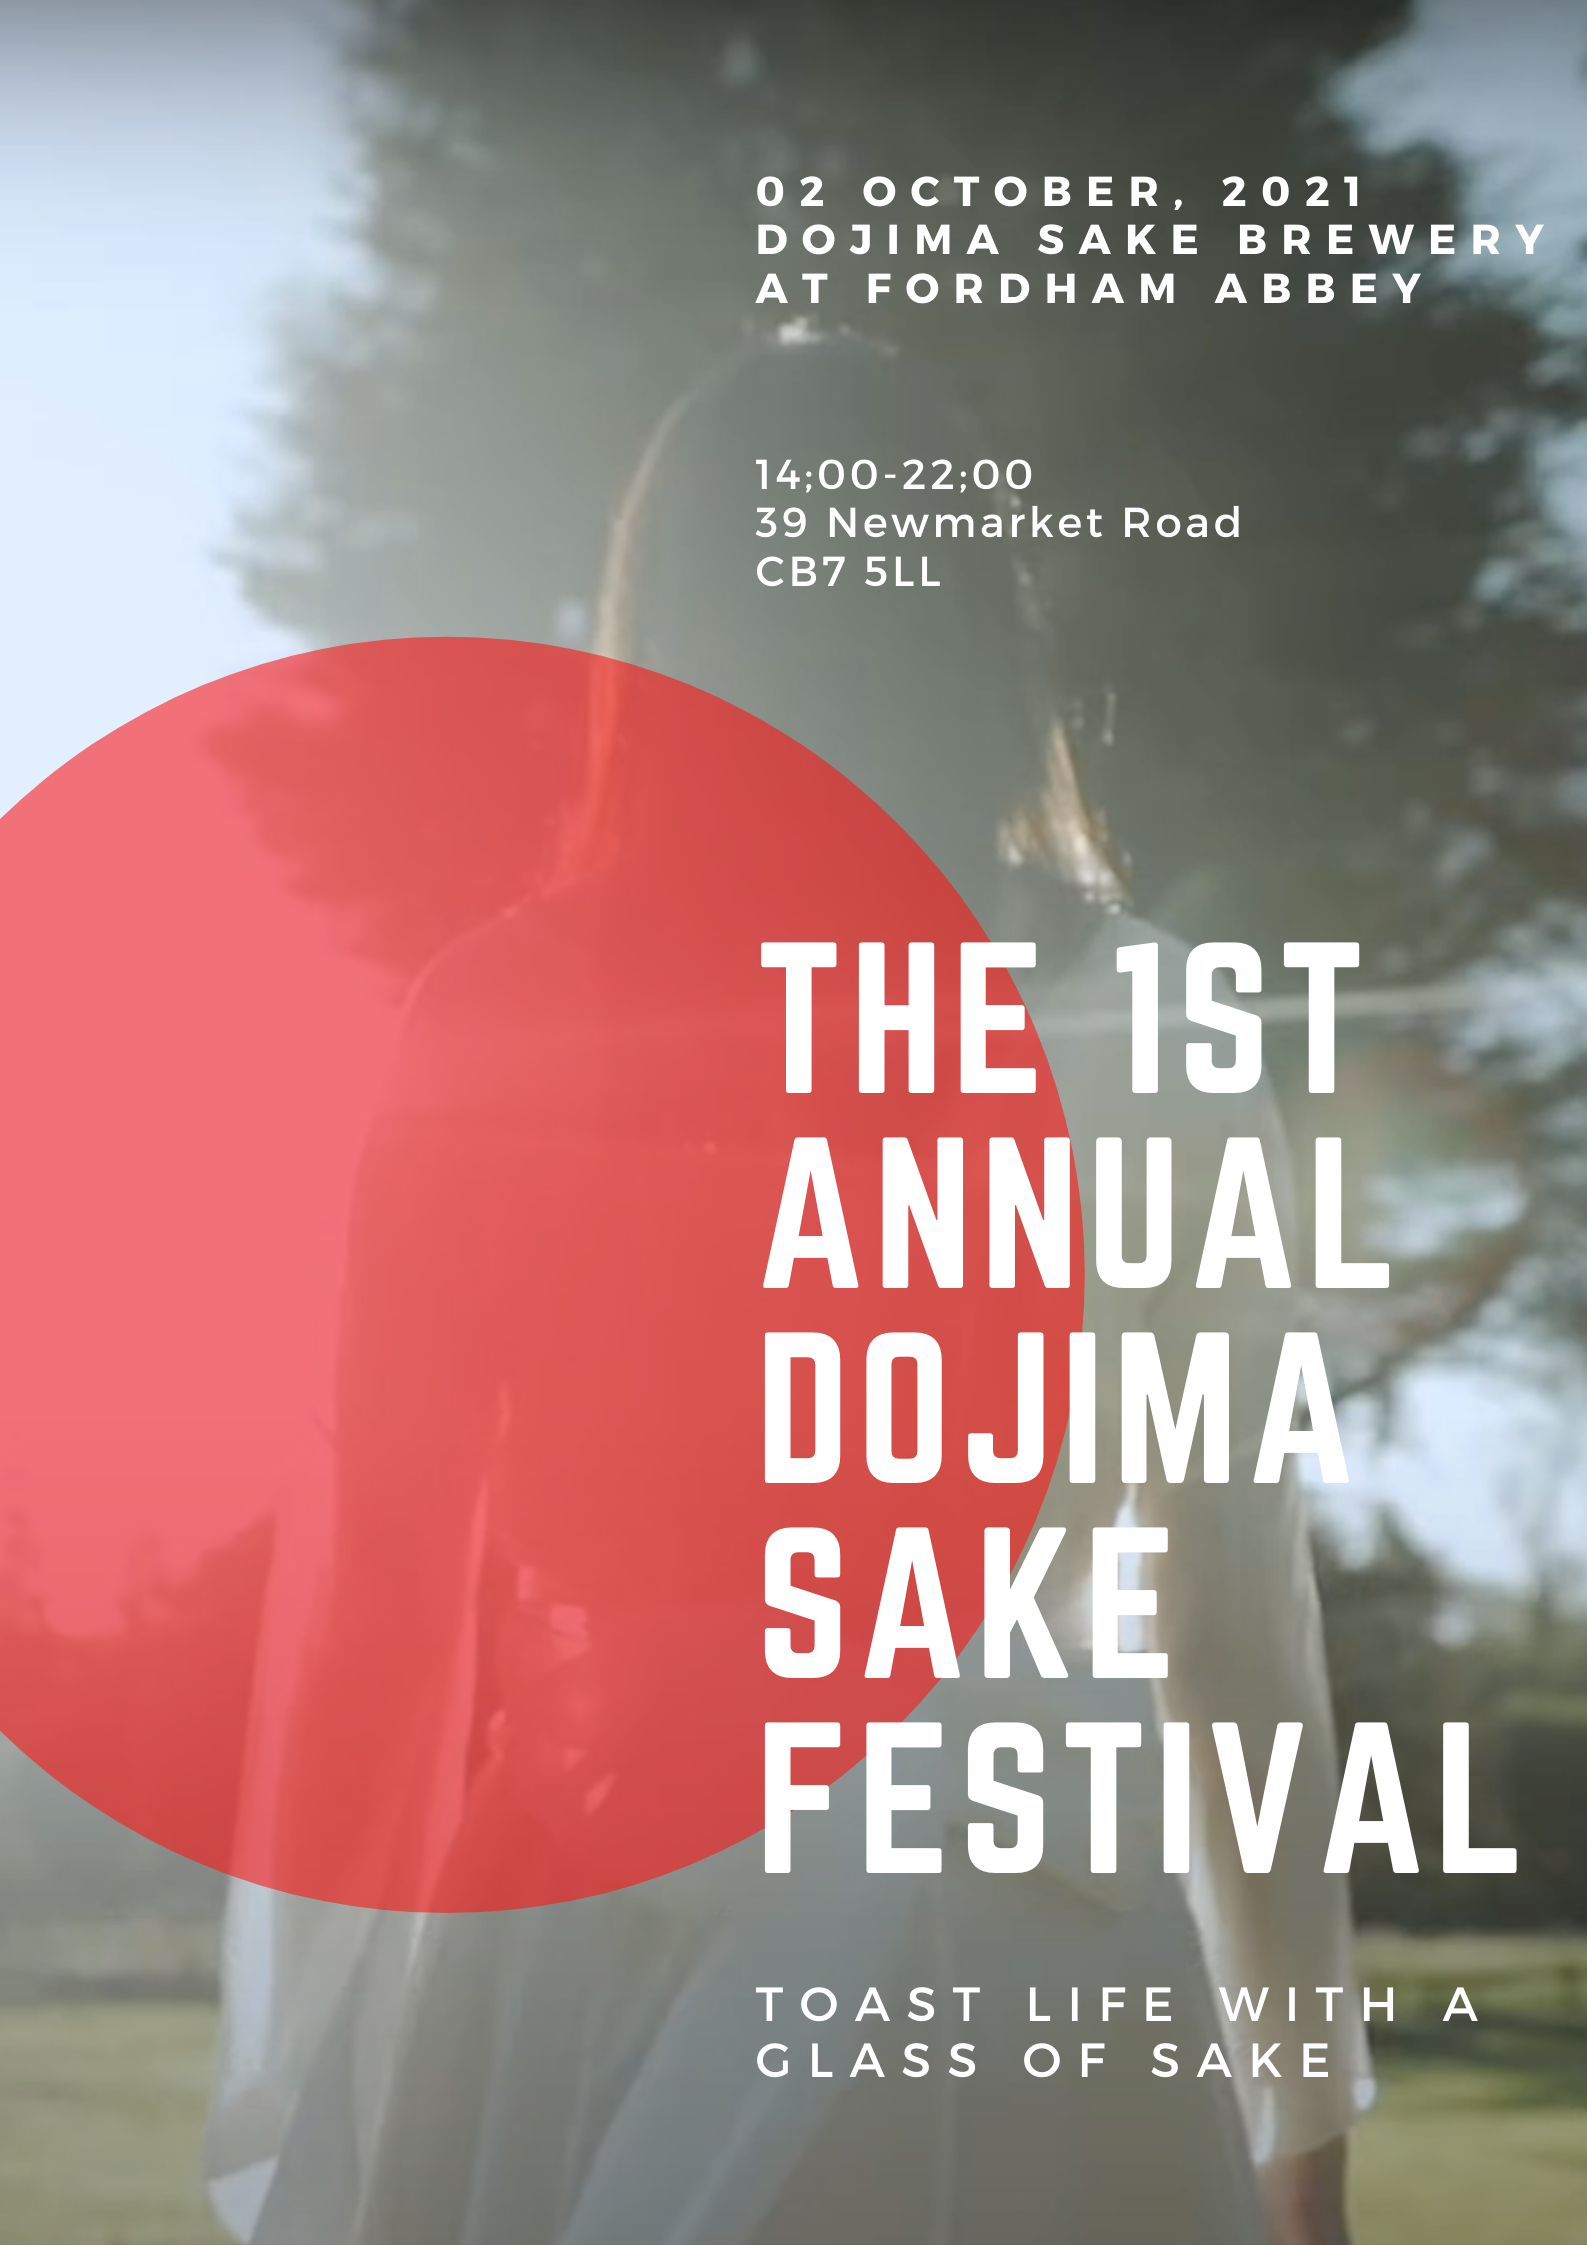 Annual Dojima Sake Festival